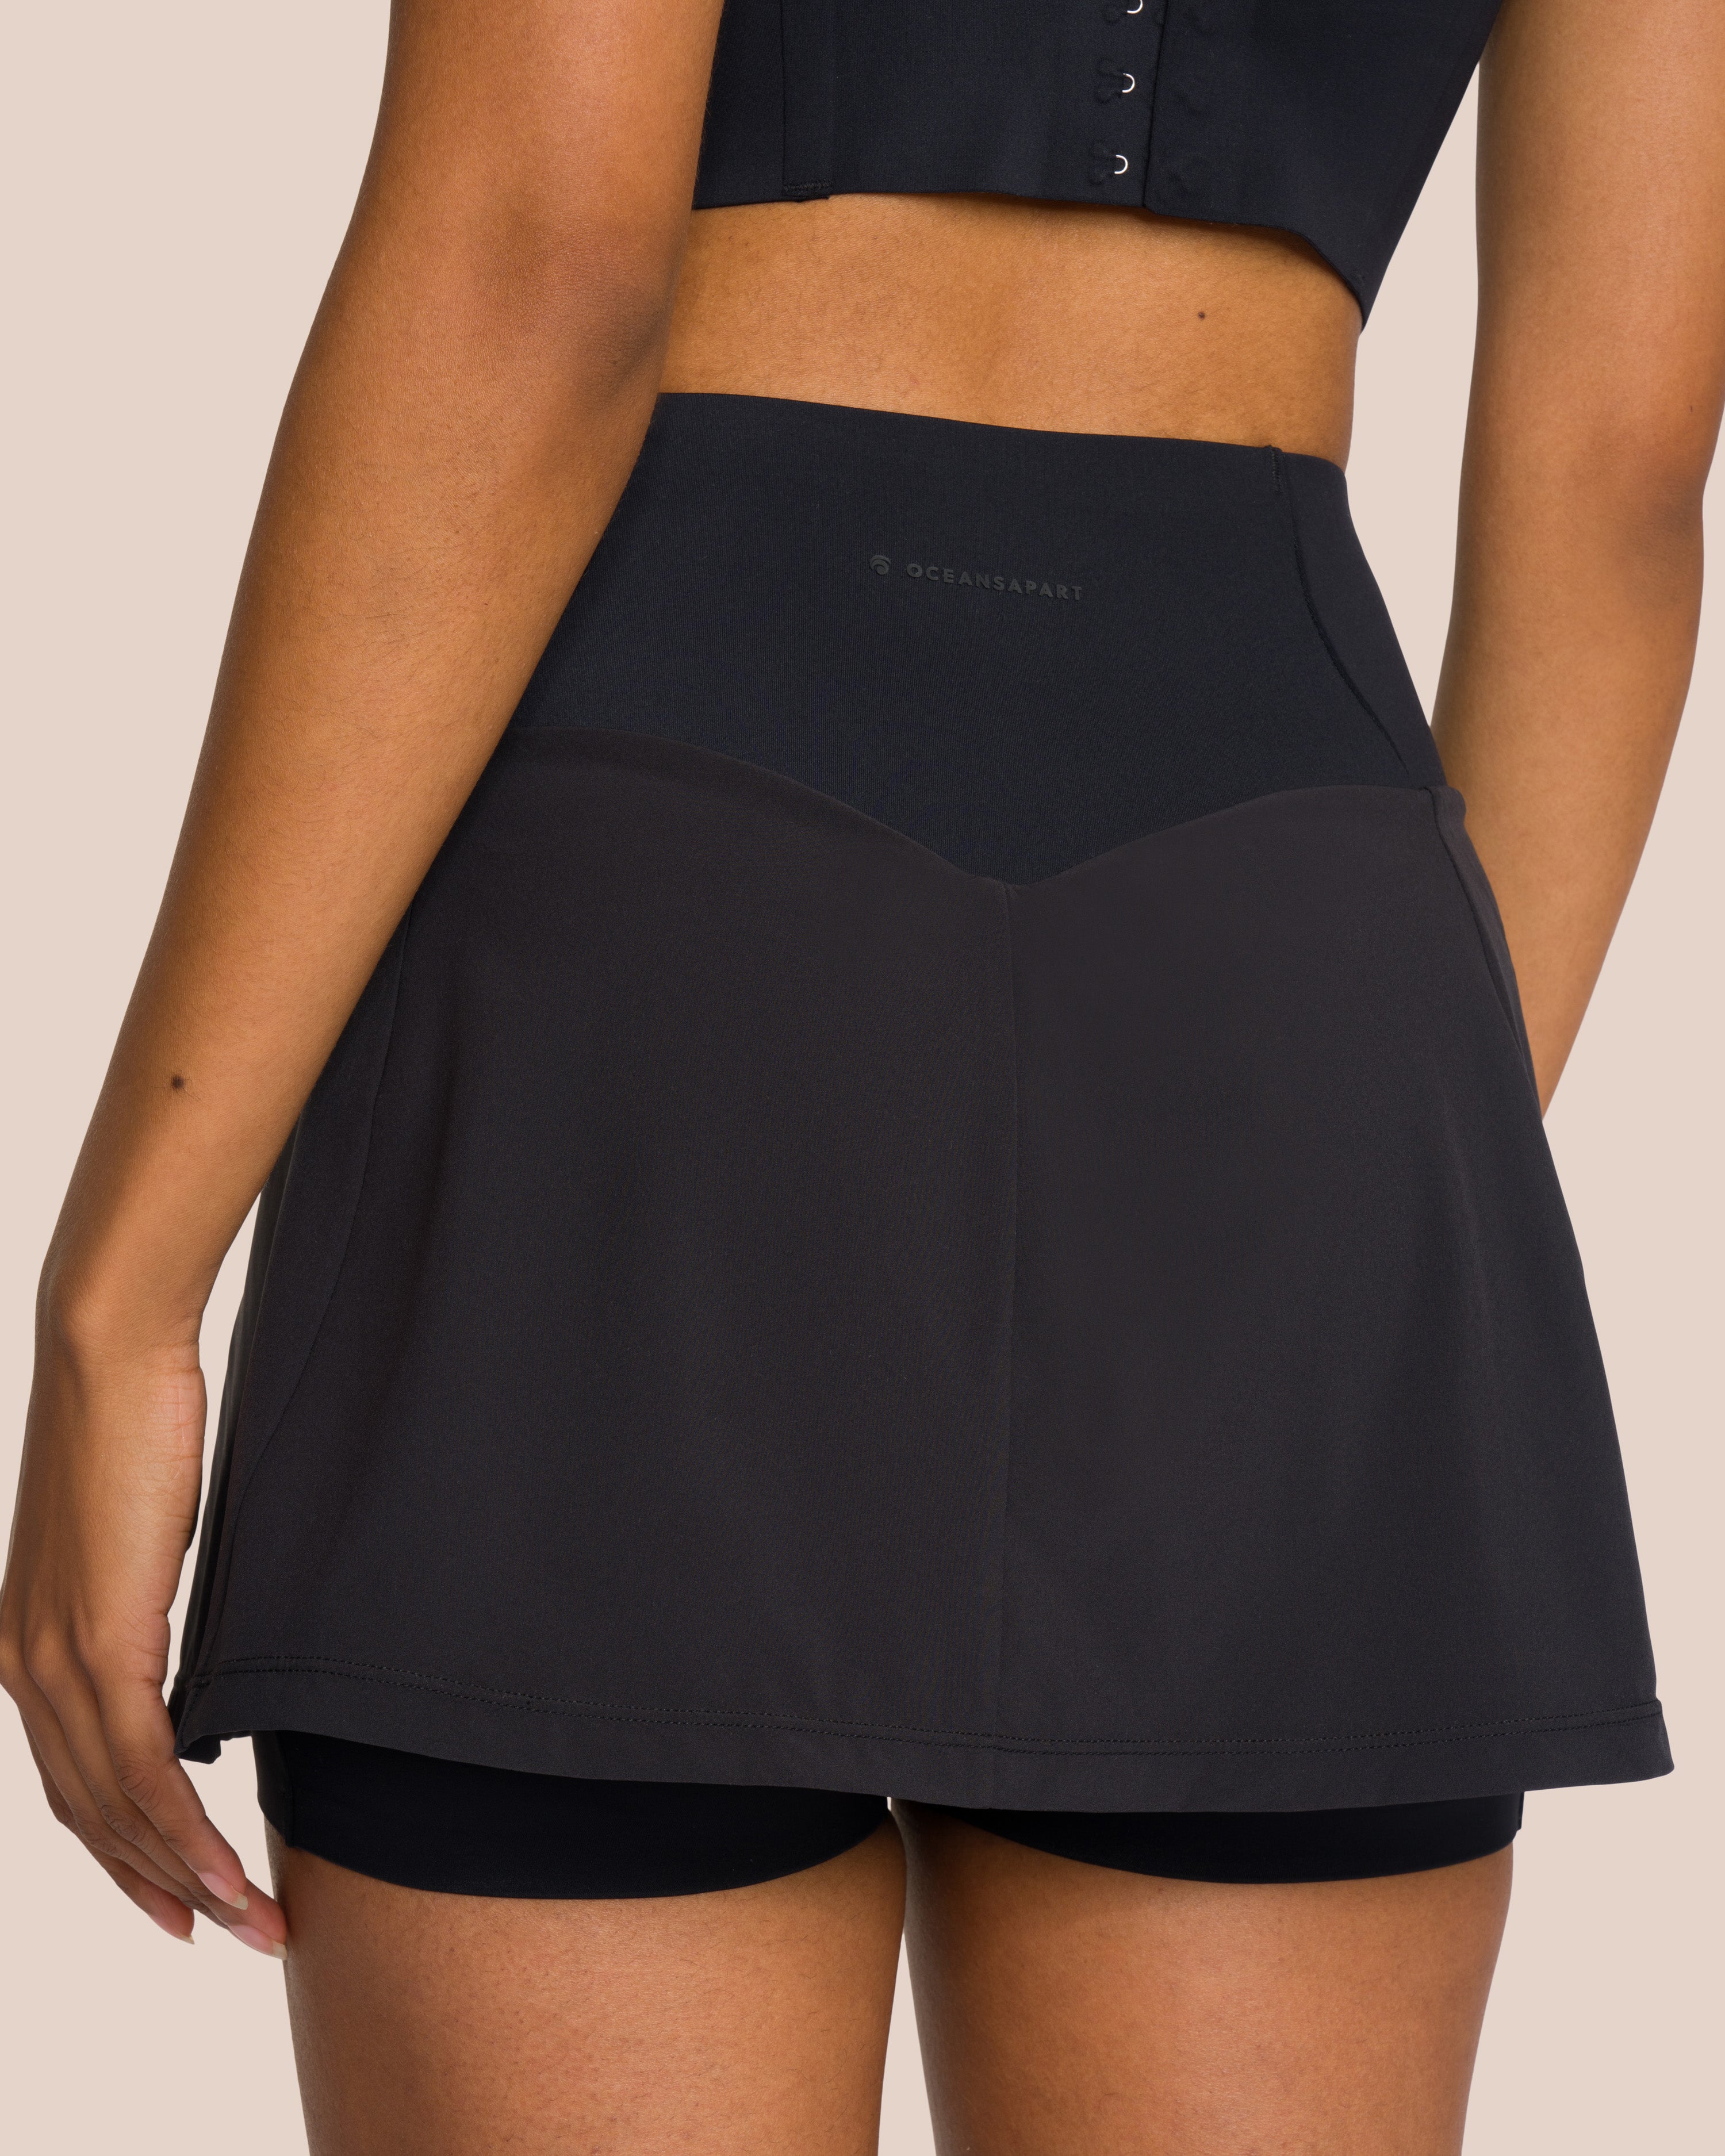 Hope Skirt Set - Black